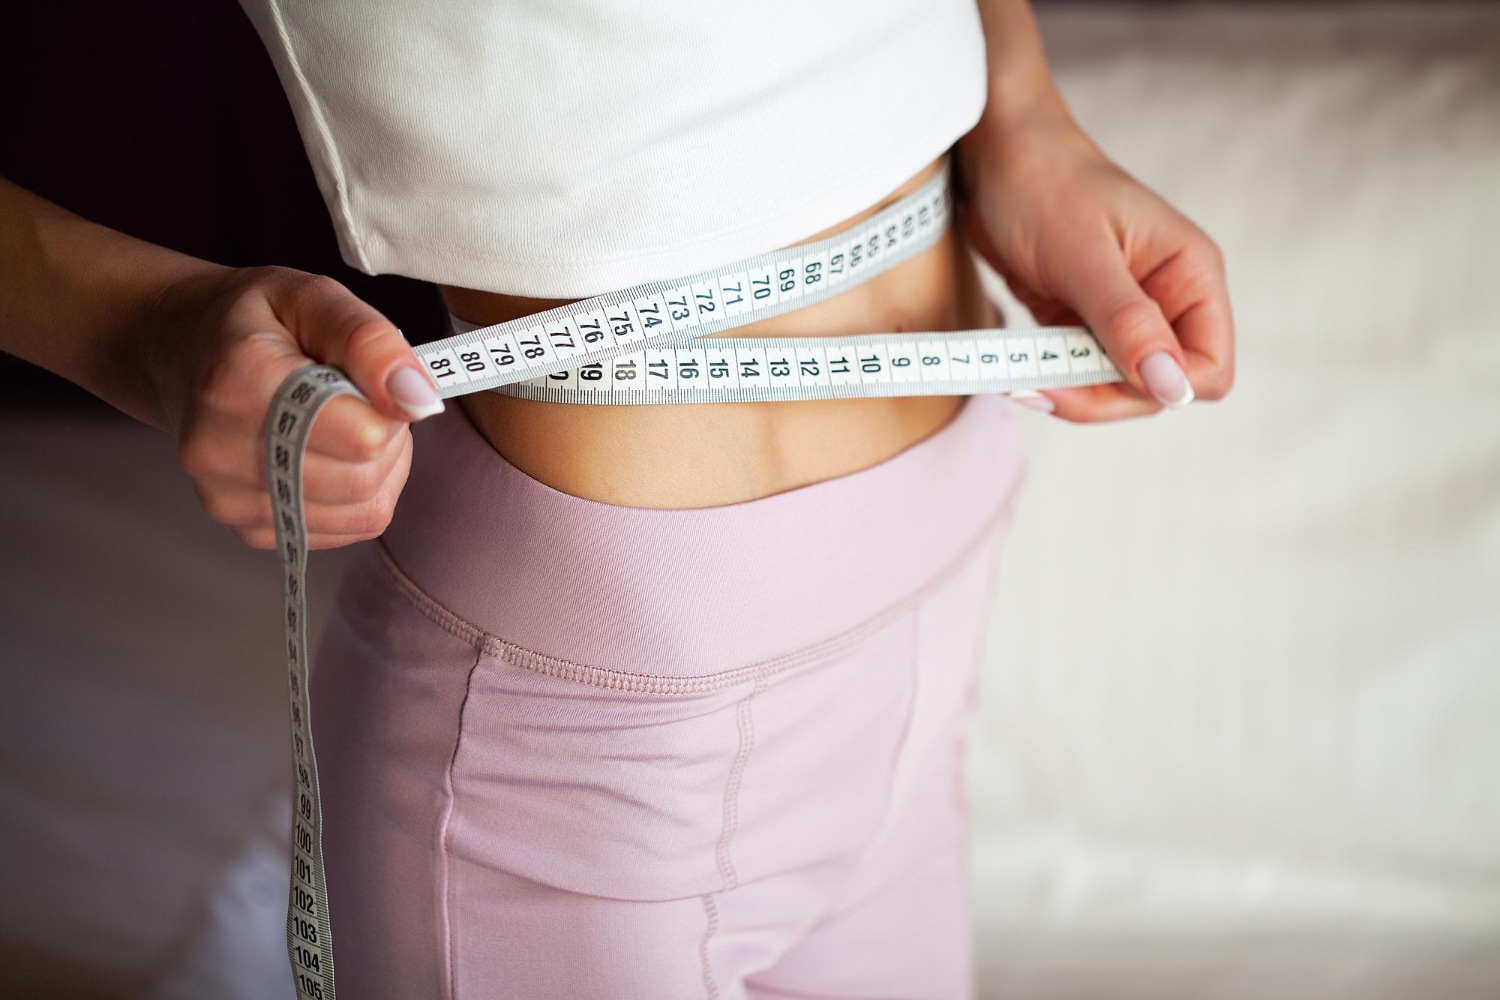 Οι λόγοι που οι γυναίκες δυσκολεύονται περισσότερο να χάσουν βάρος